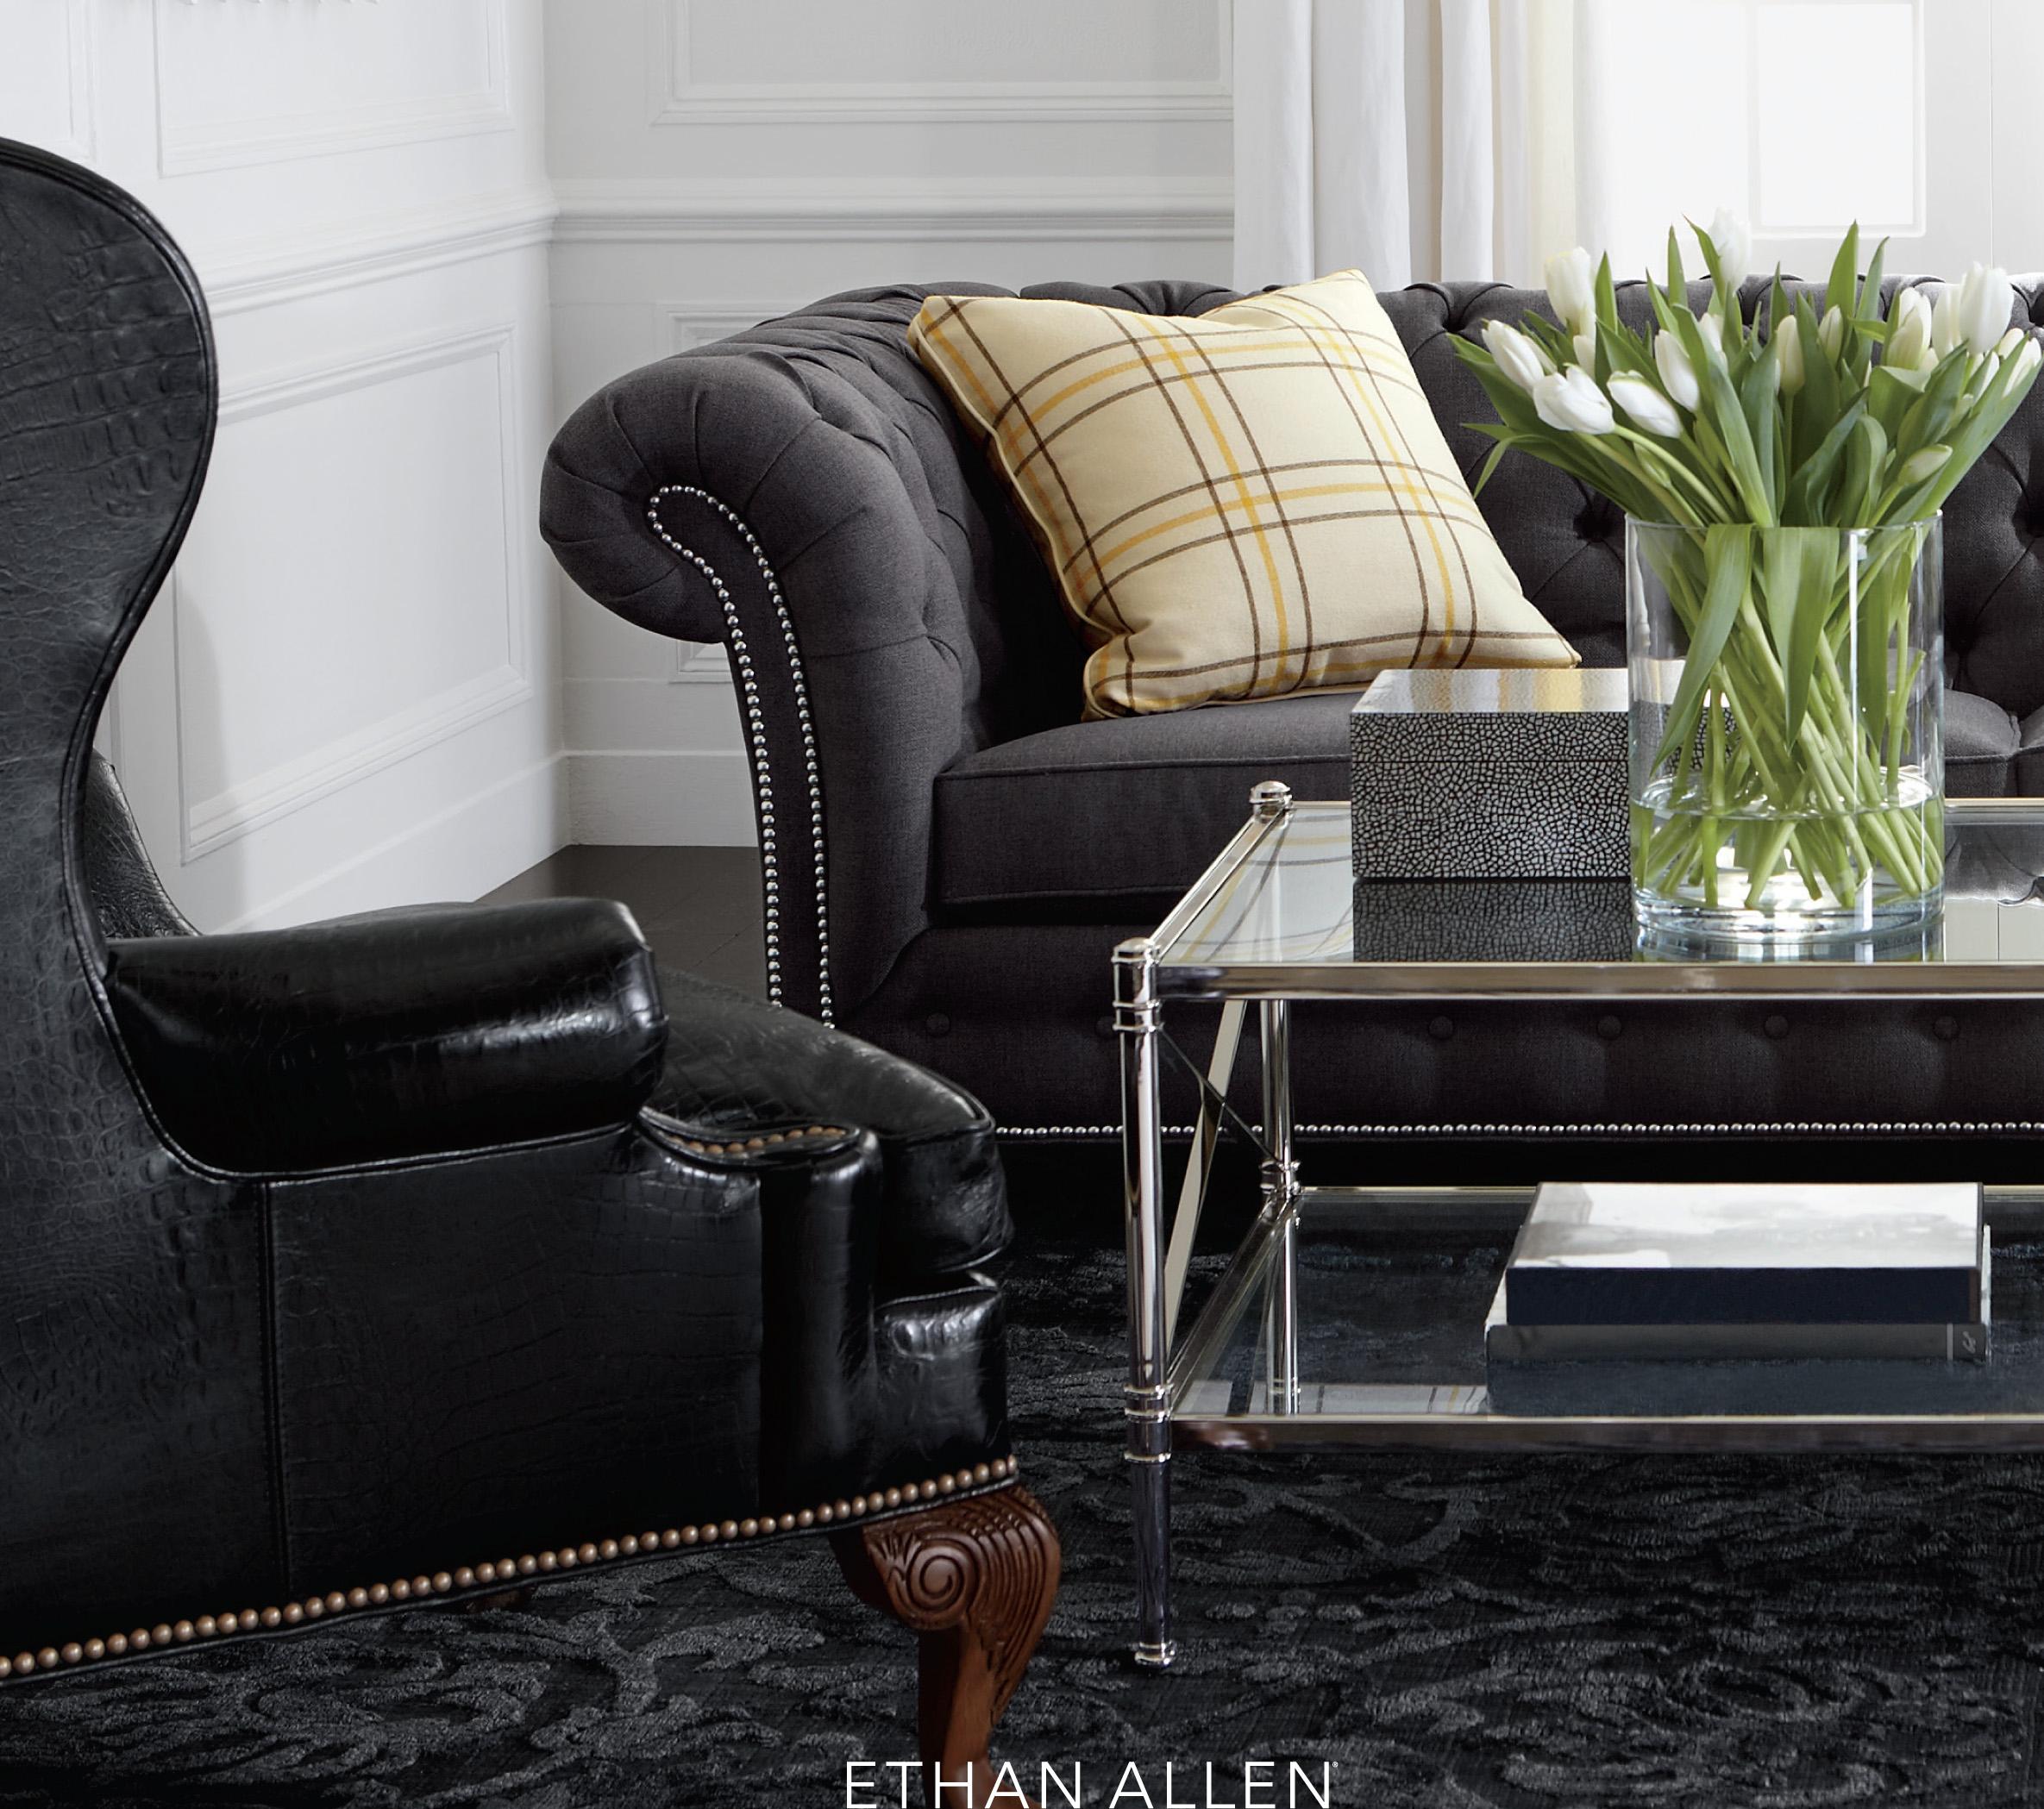 Ethan Allen upholstered furniture